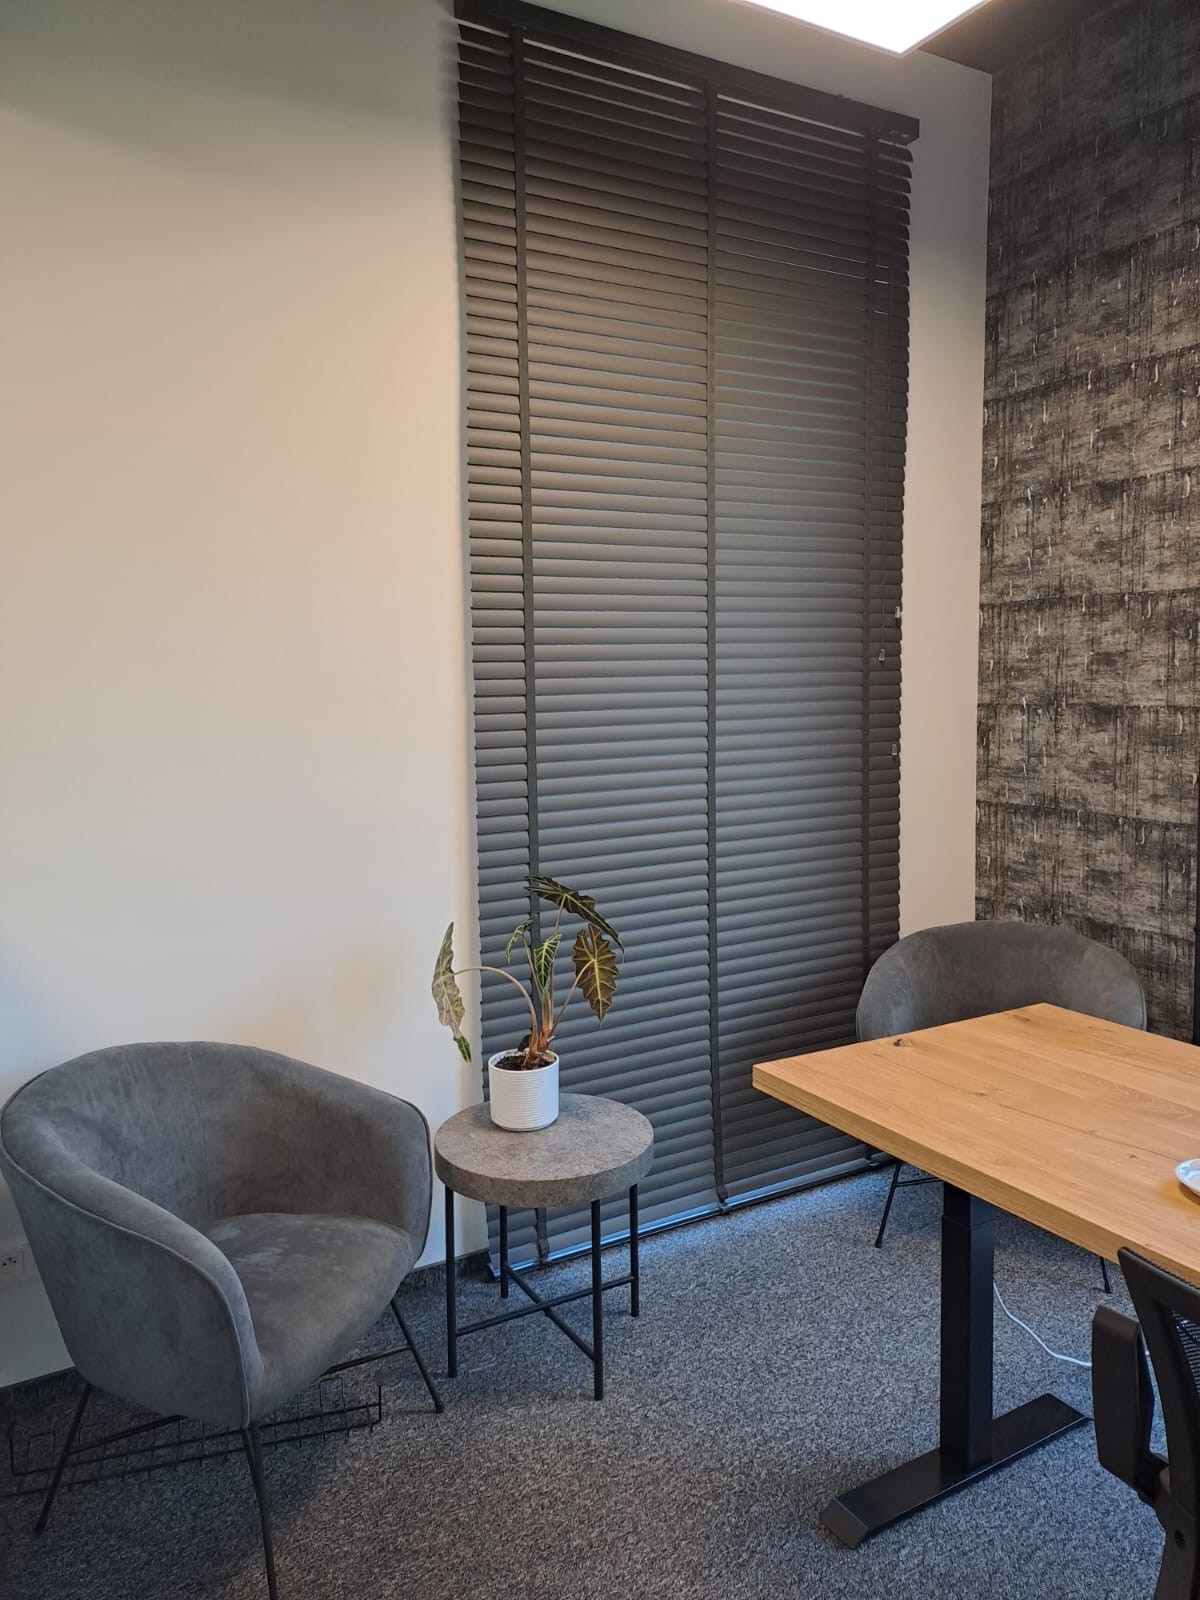 Zdjęcie prezentuje elegancko zaprojektowane żaluzje aluminiowe w nowoczesnym biurze w Łodzi. Ich estetyczny wygląd doskonale harmonizuje z wnętrzem, zapewniając jednocześnie ochronę przed słońcem i zachowując prywatność.